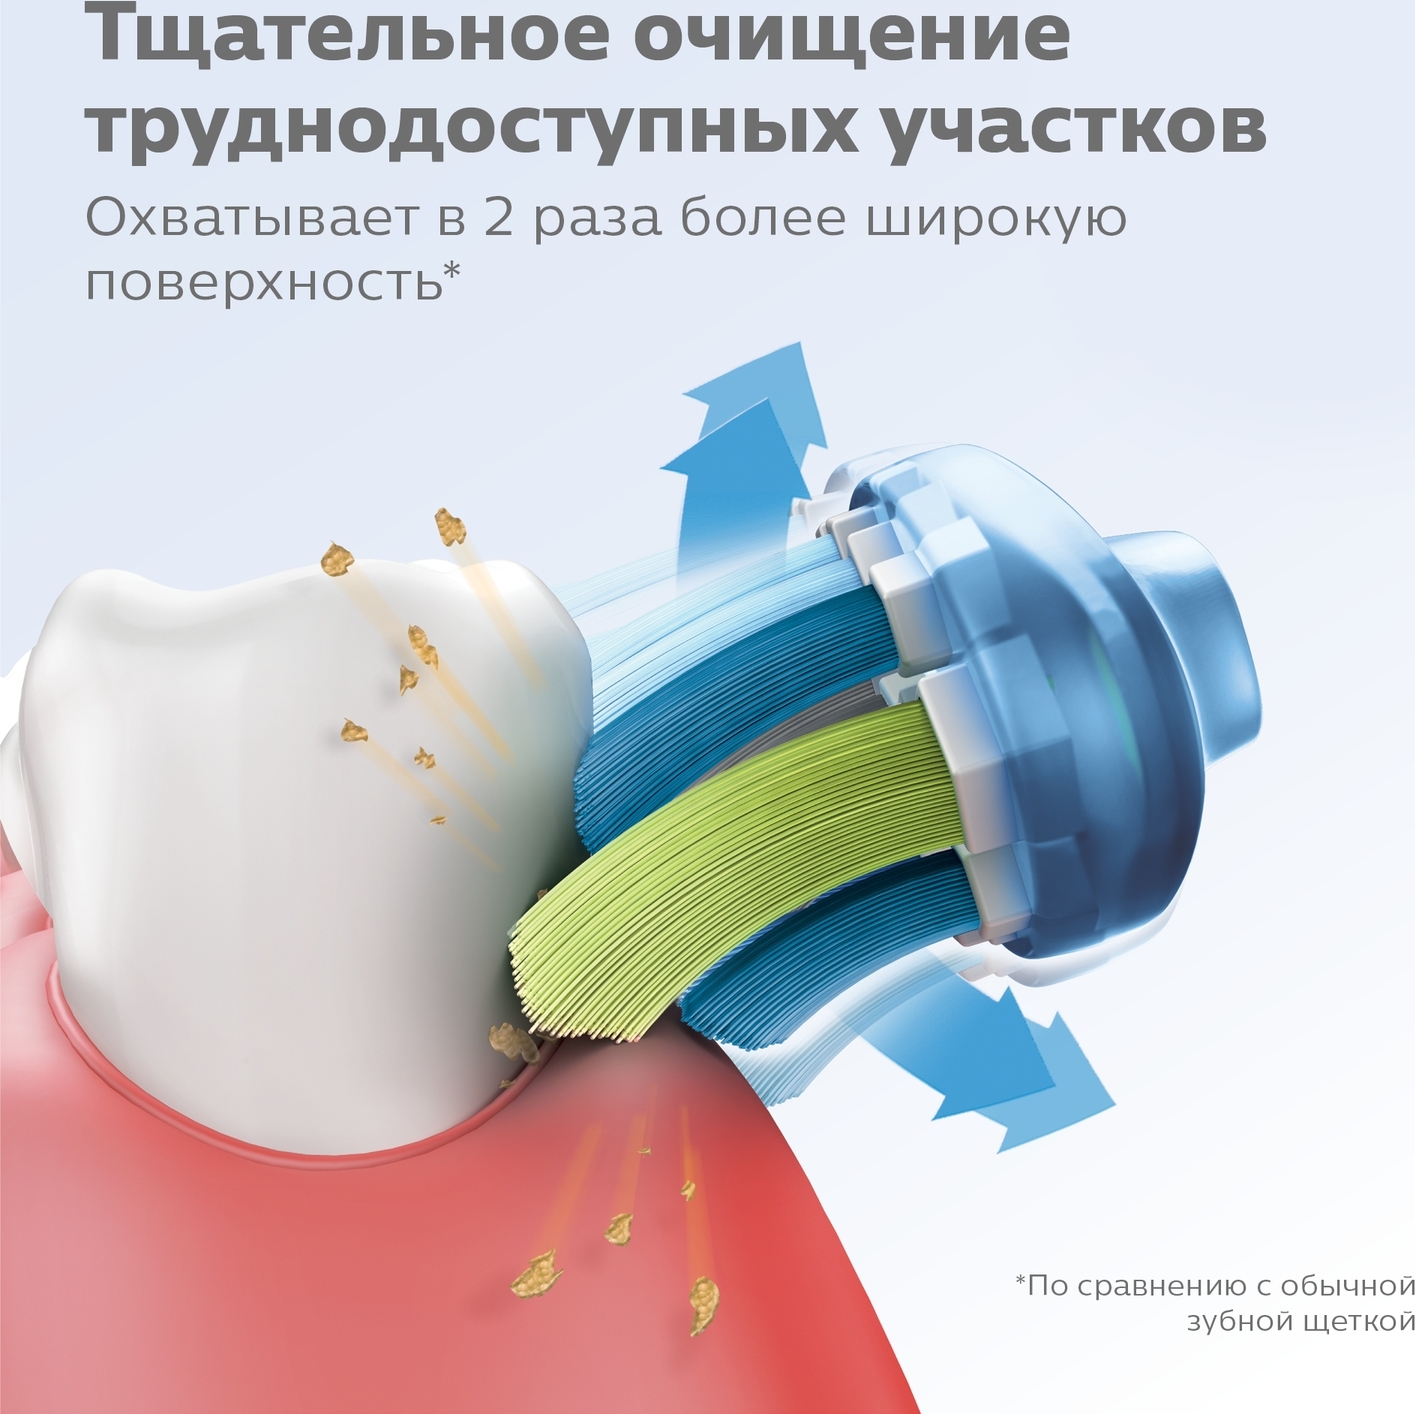 Насадка Для Зубной Щетки Philips Sonicare C3